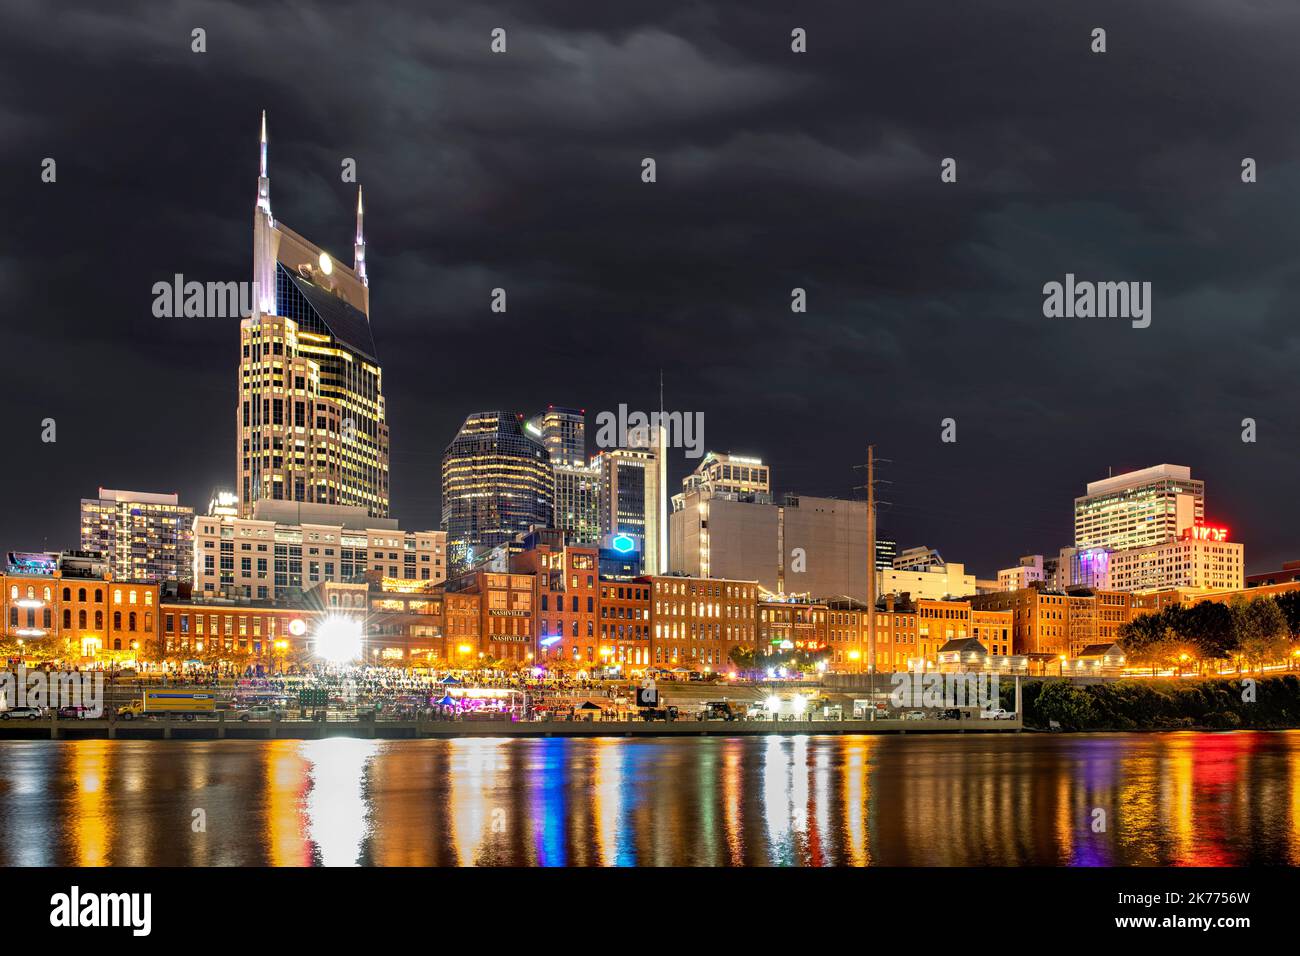 Le magnifique mage du célèbre centre-ville de Nashville le long de la rivière montre une attraction touristique animée en bord de mer la nuit. Banque D'Images